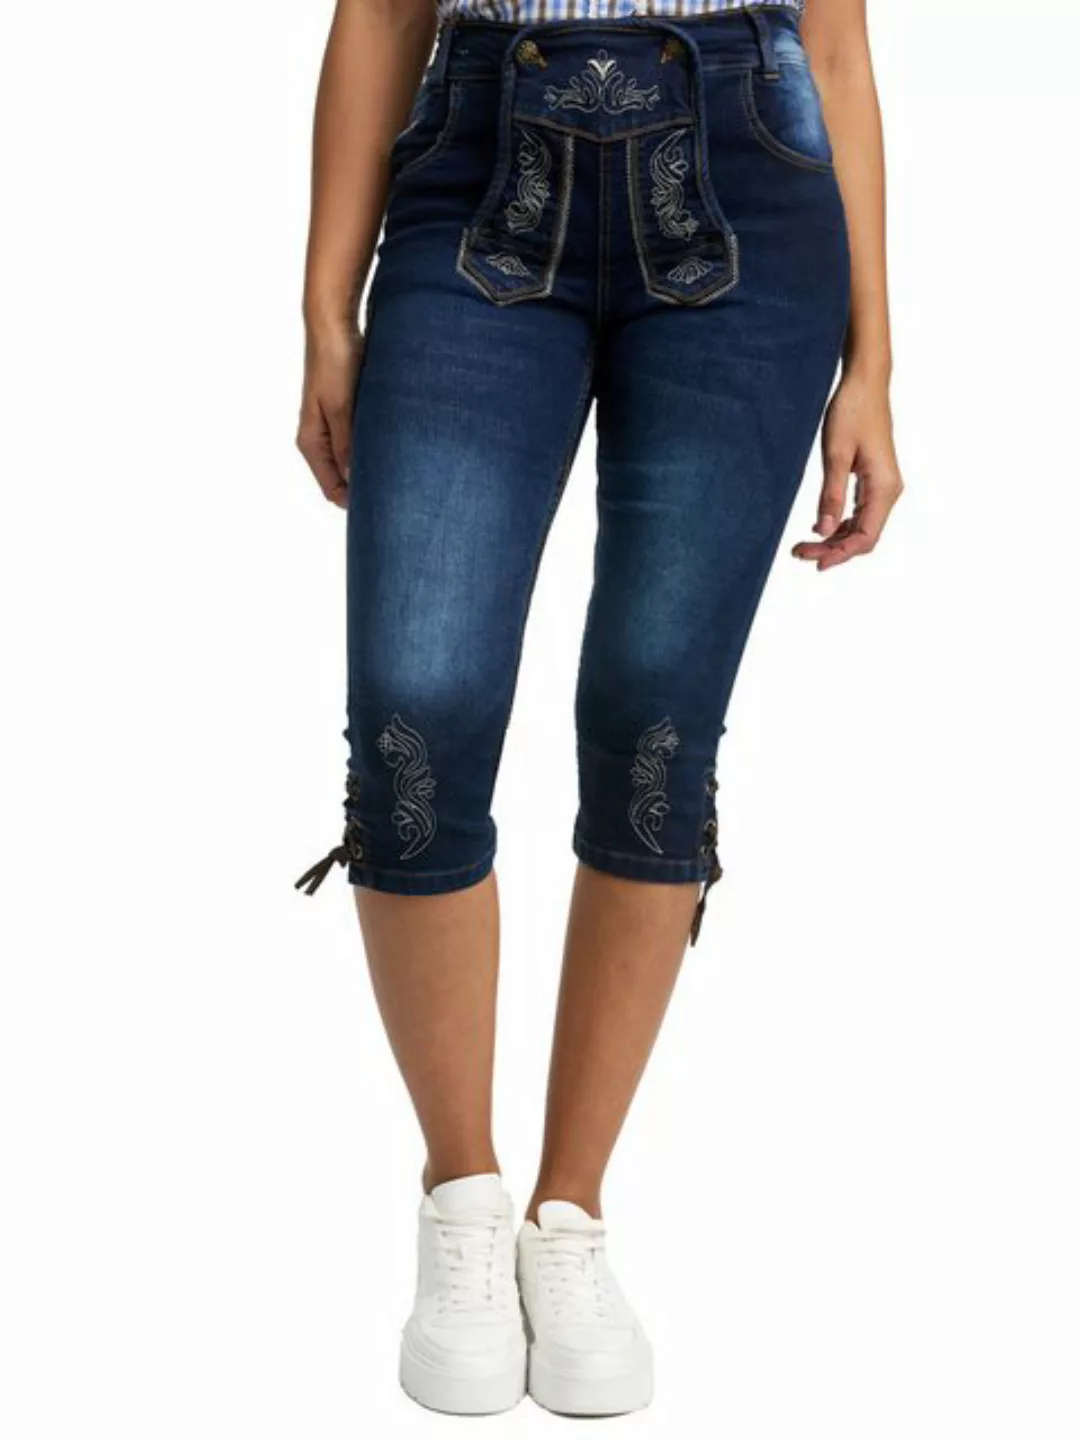 Steigenhöfer Manufaktur Jeansshorts Trachtenhosen Look traditionelle Damen- günstig online kaufen